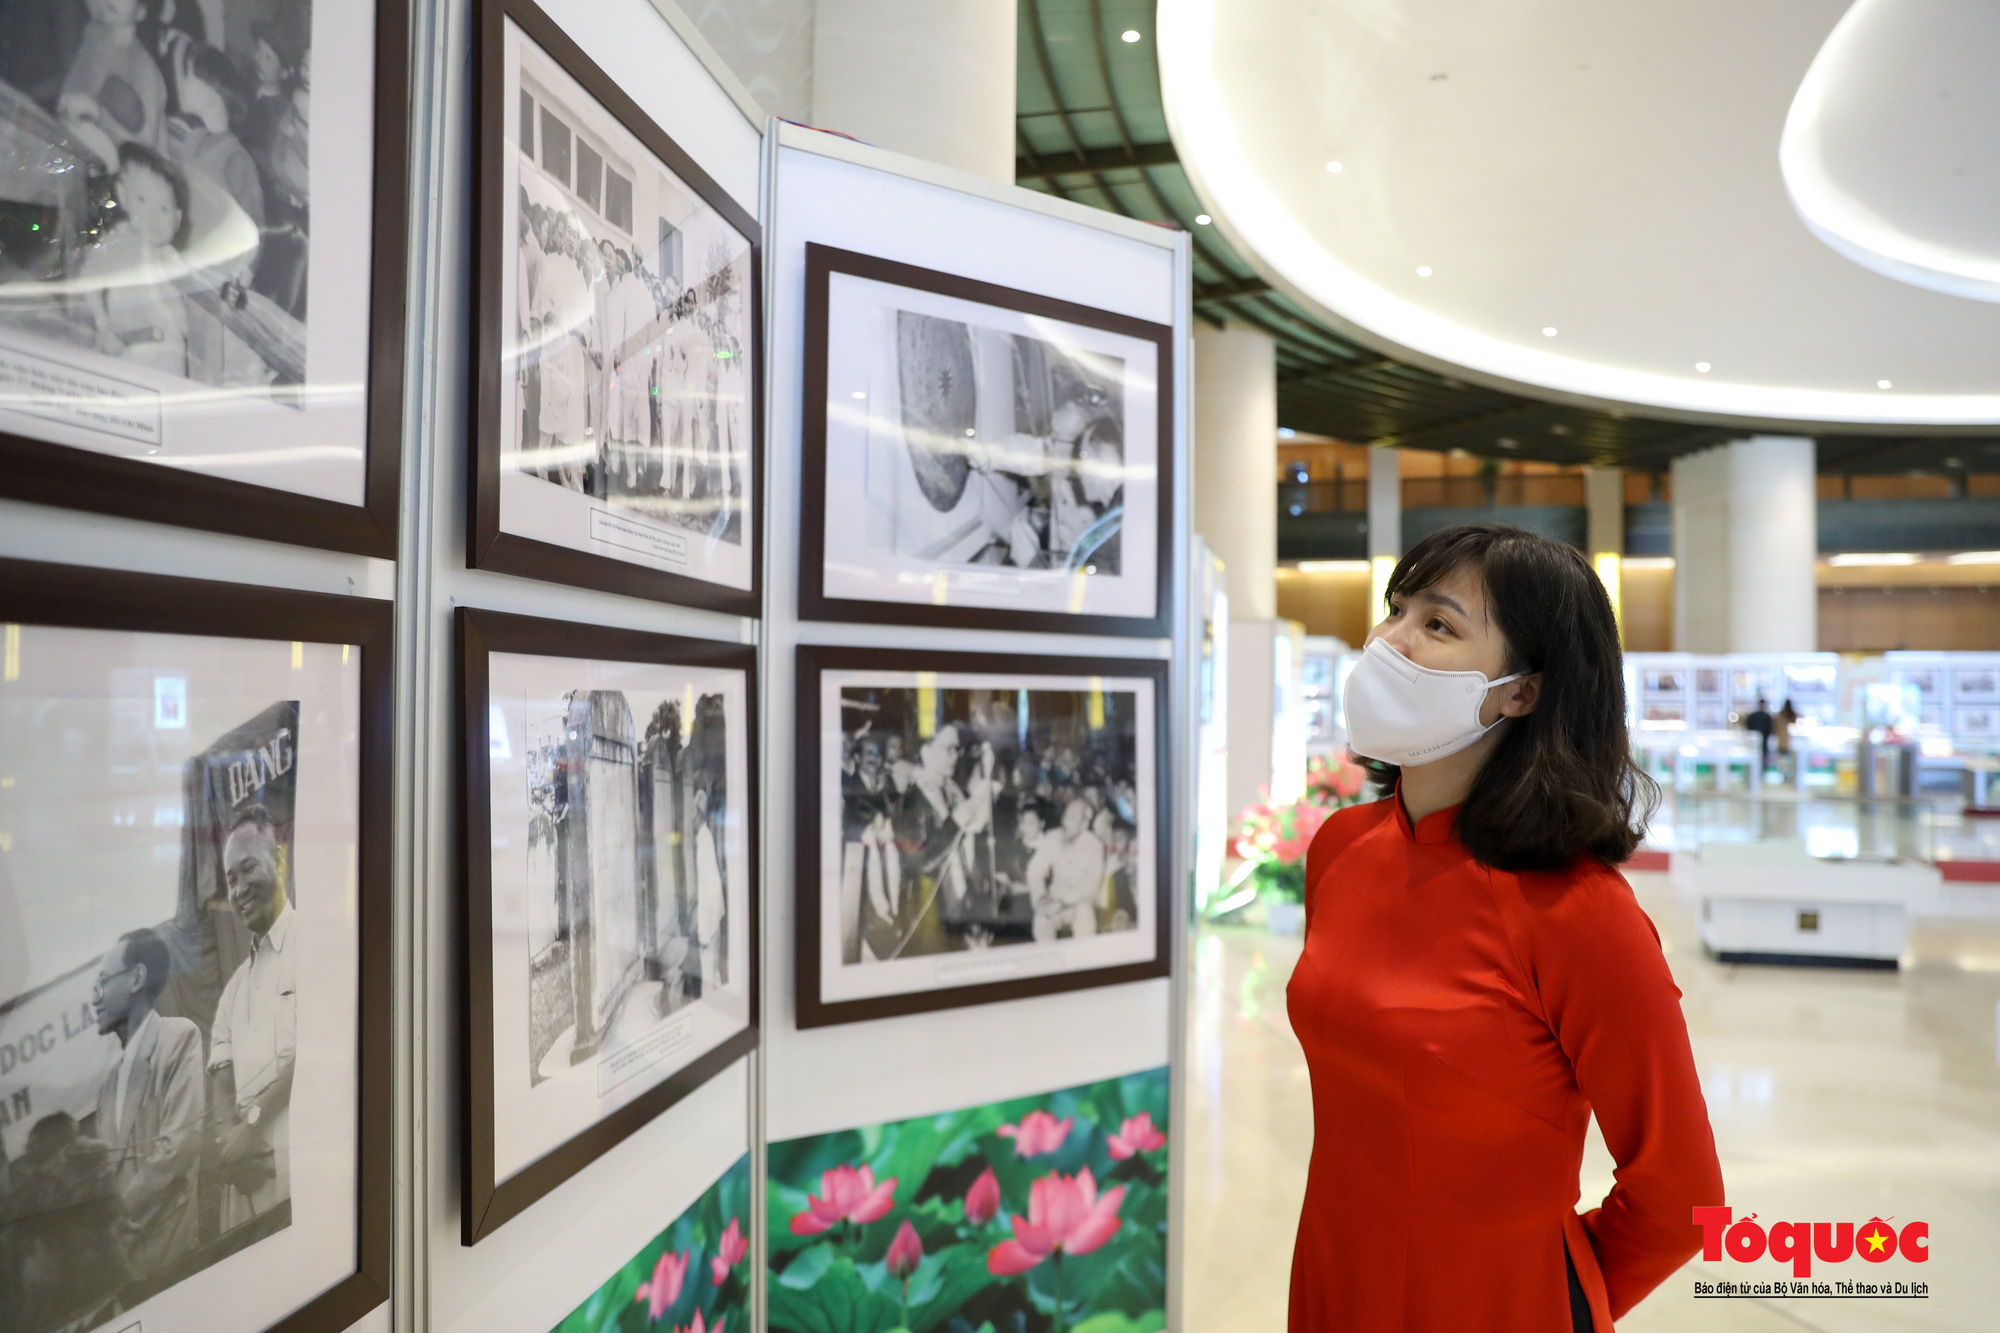 Triển lãm “Văn hóa soi đường cho quốc dân đi” trưng bày 320 tác phẩm ảnh nghệ thuật tiêu biểu - Ảnh 5.